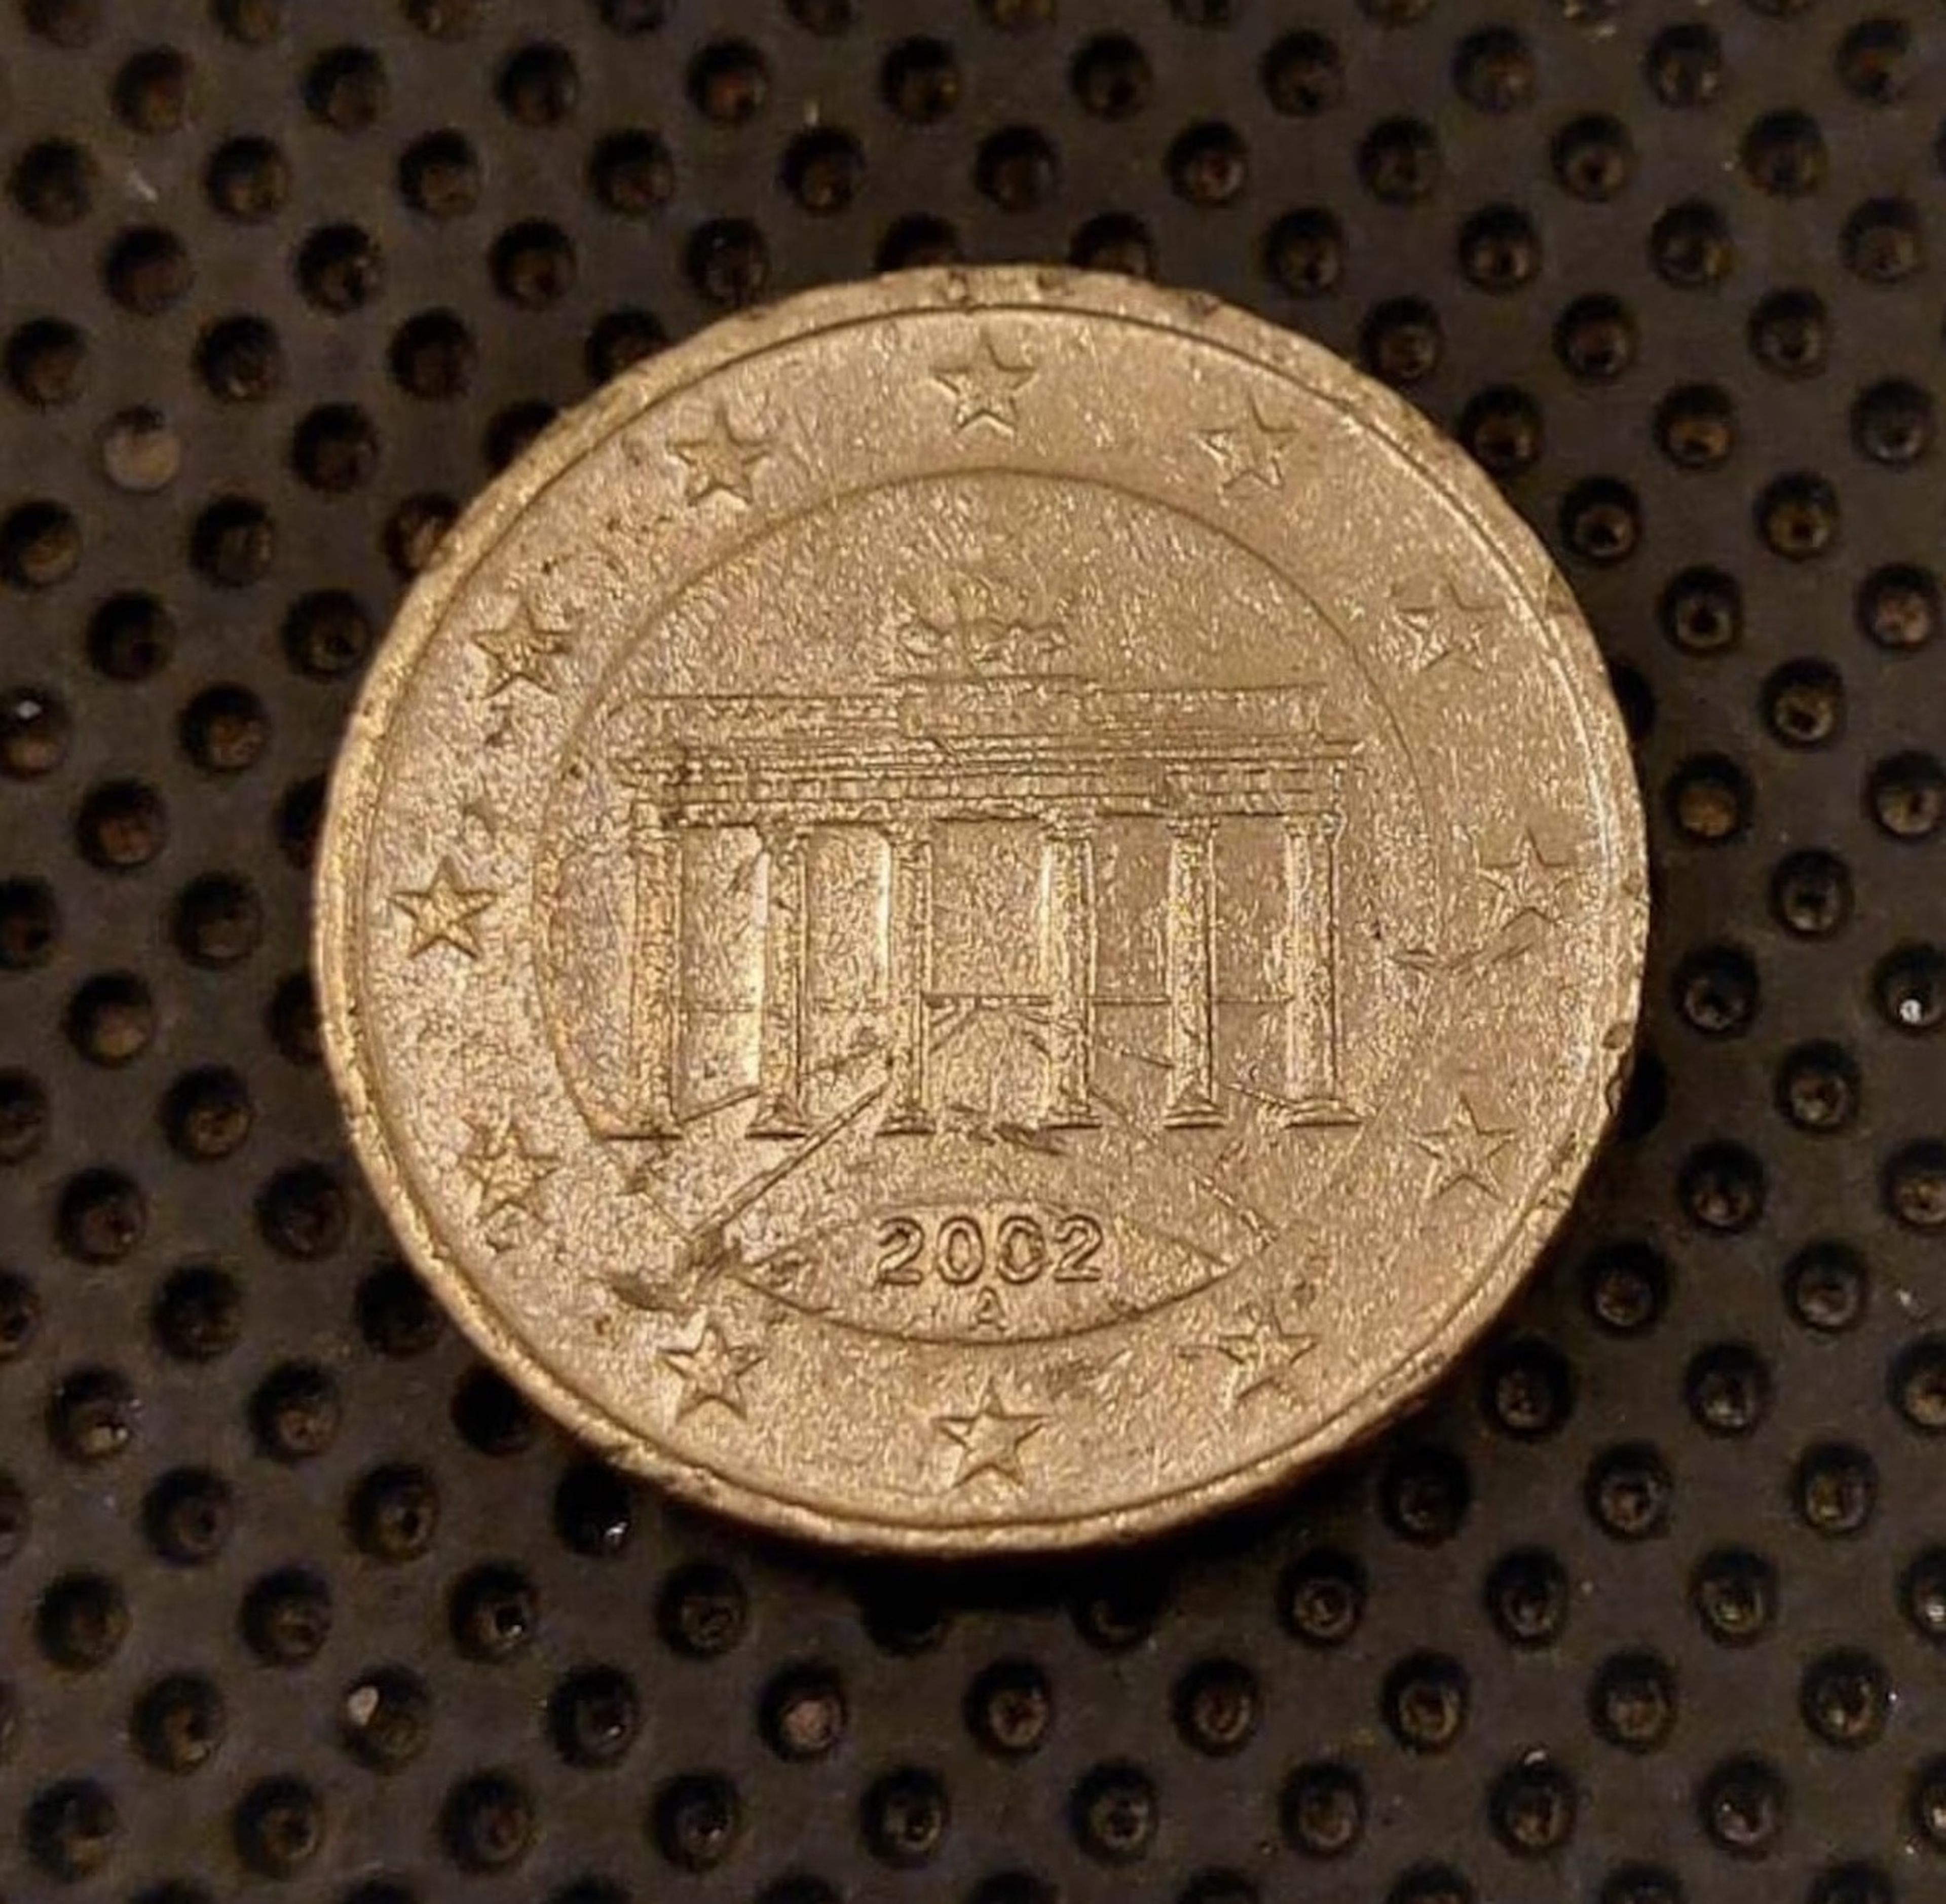 20 céntimos de Alemania de 2002